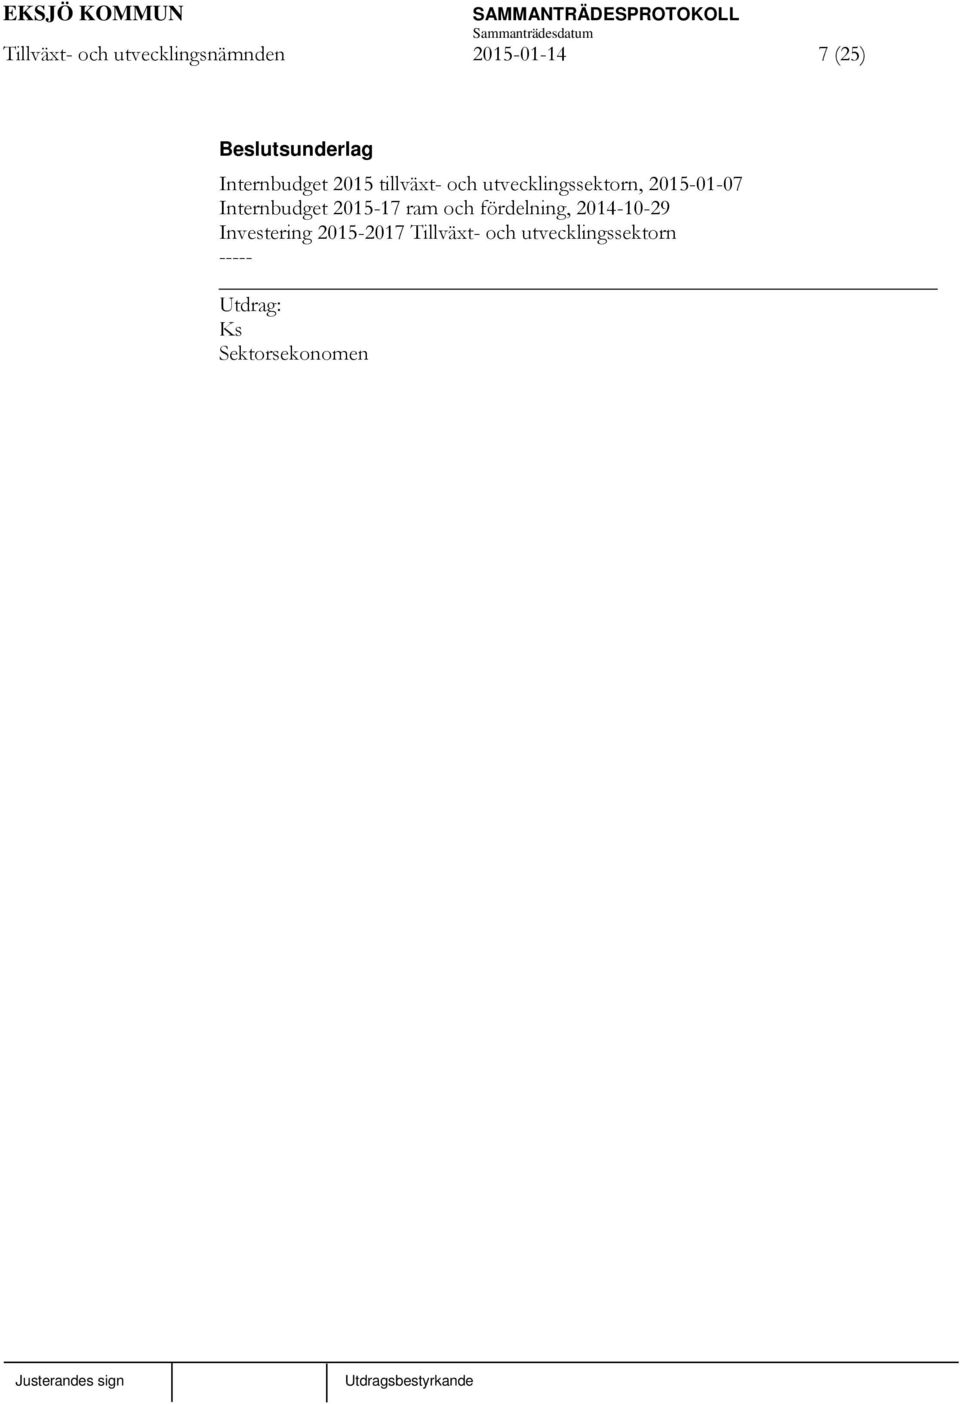 Internbudget 2015-17 ram och fördelning, 2014-10-29 Investering